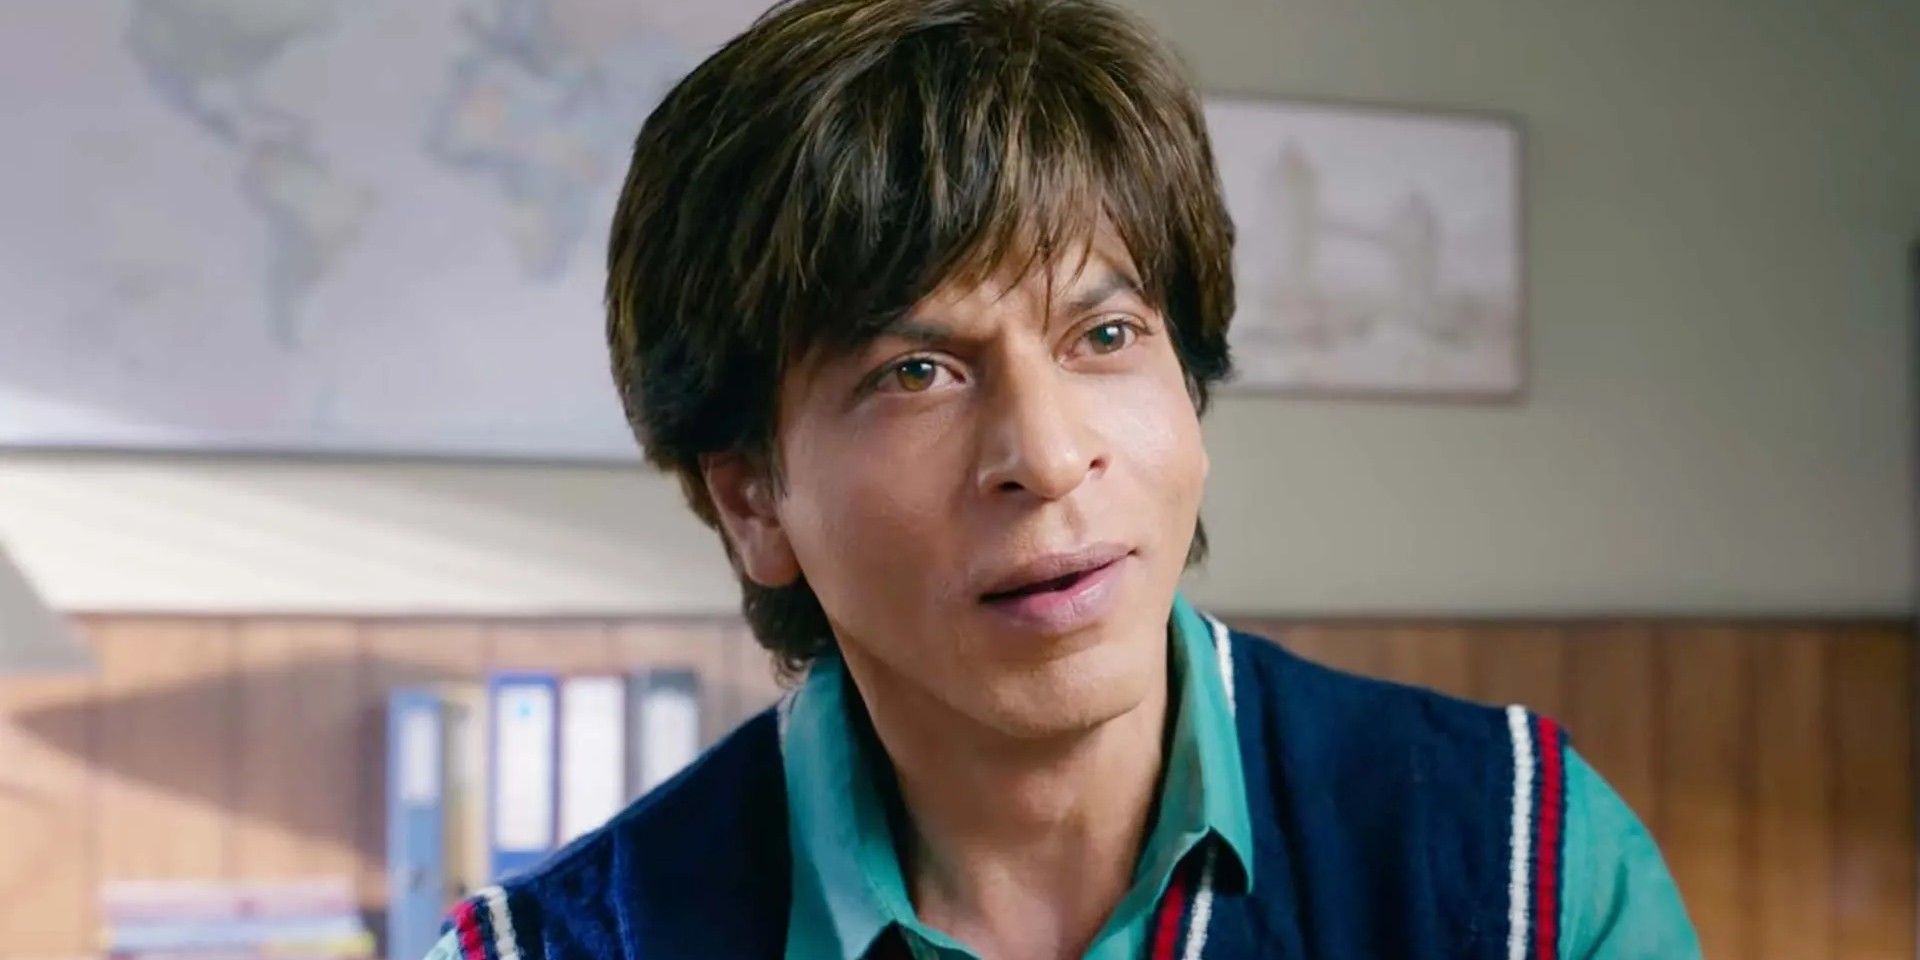 La nueva comedia de la India alcanza un hito en la taquilla mundial mientras SRK tiene un gran año en Bollywood (y su regreso)